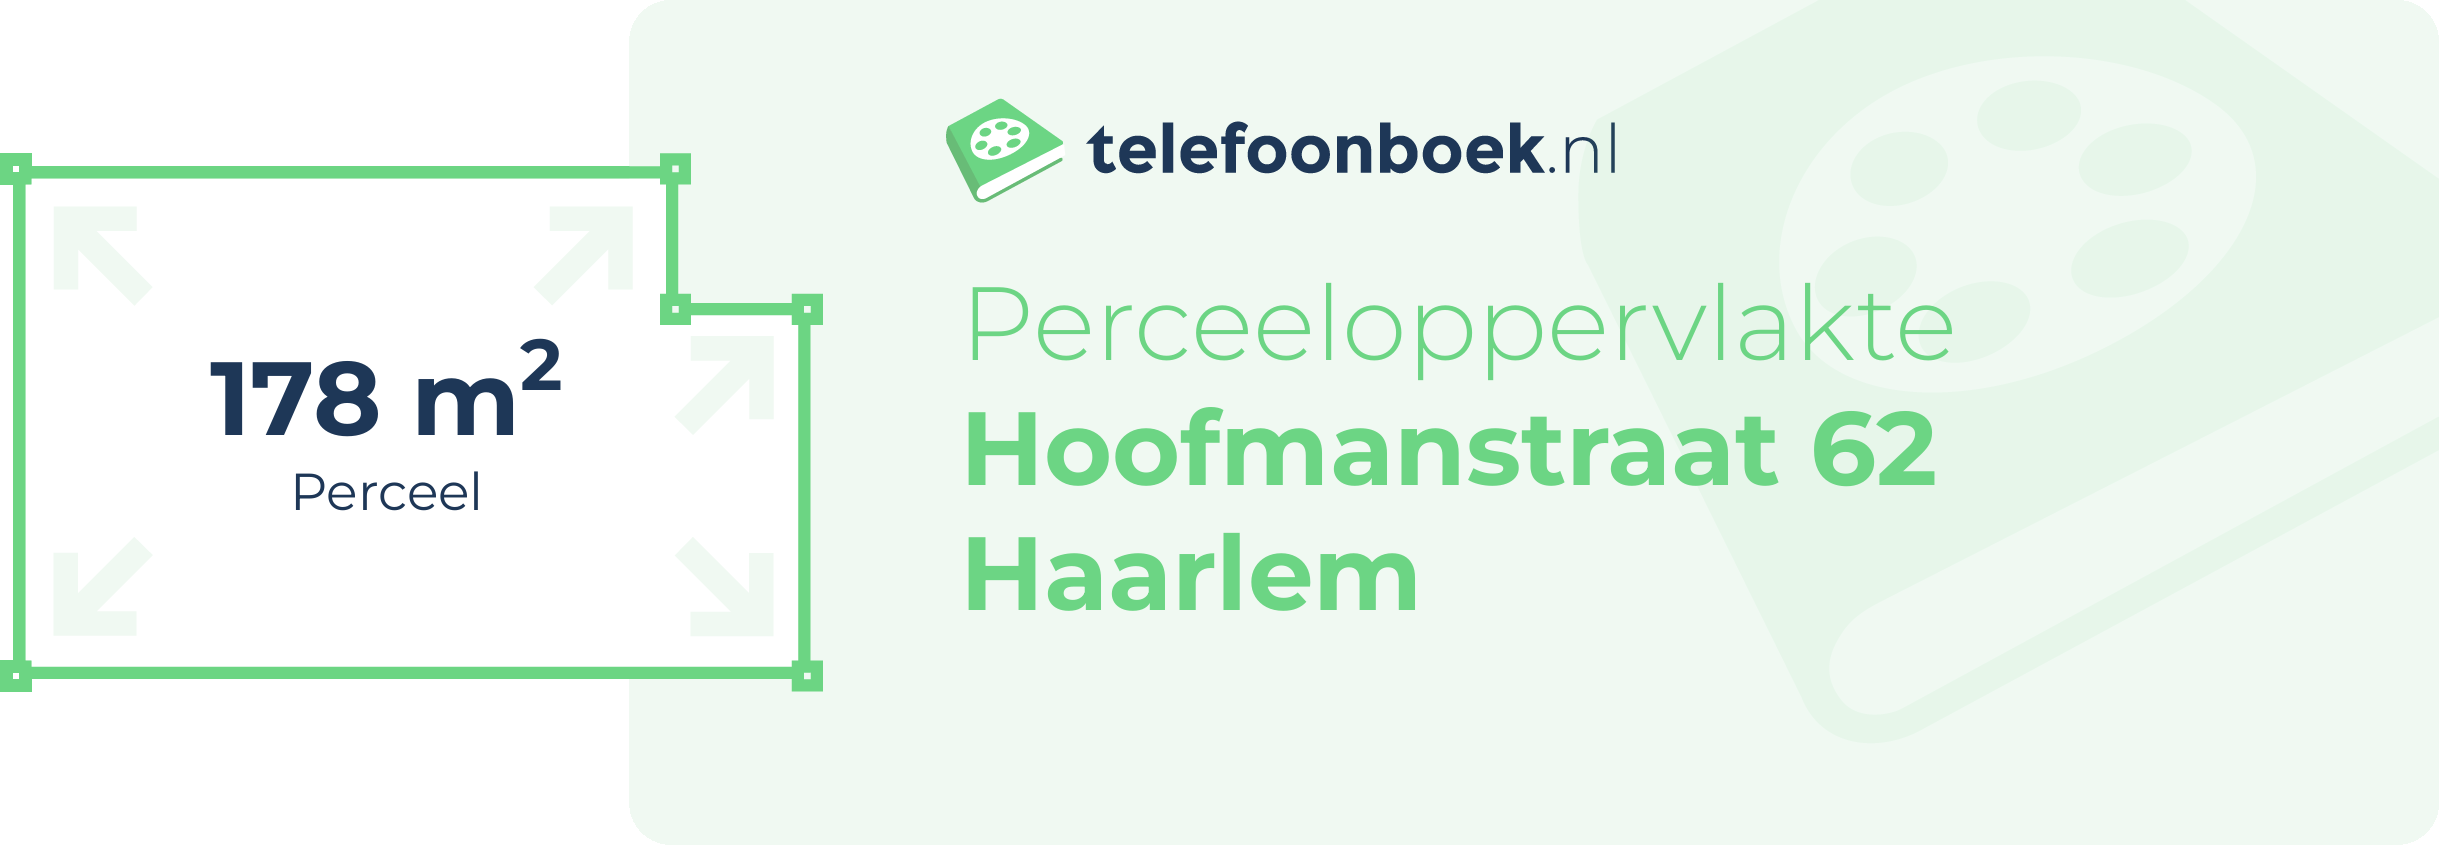 Perceeloppervlakte Hoofmanstraat 62 Haarlem